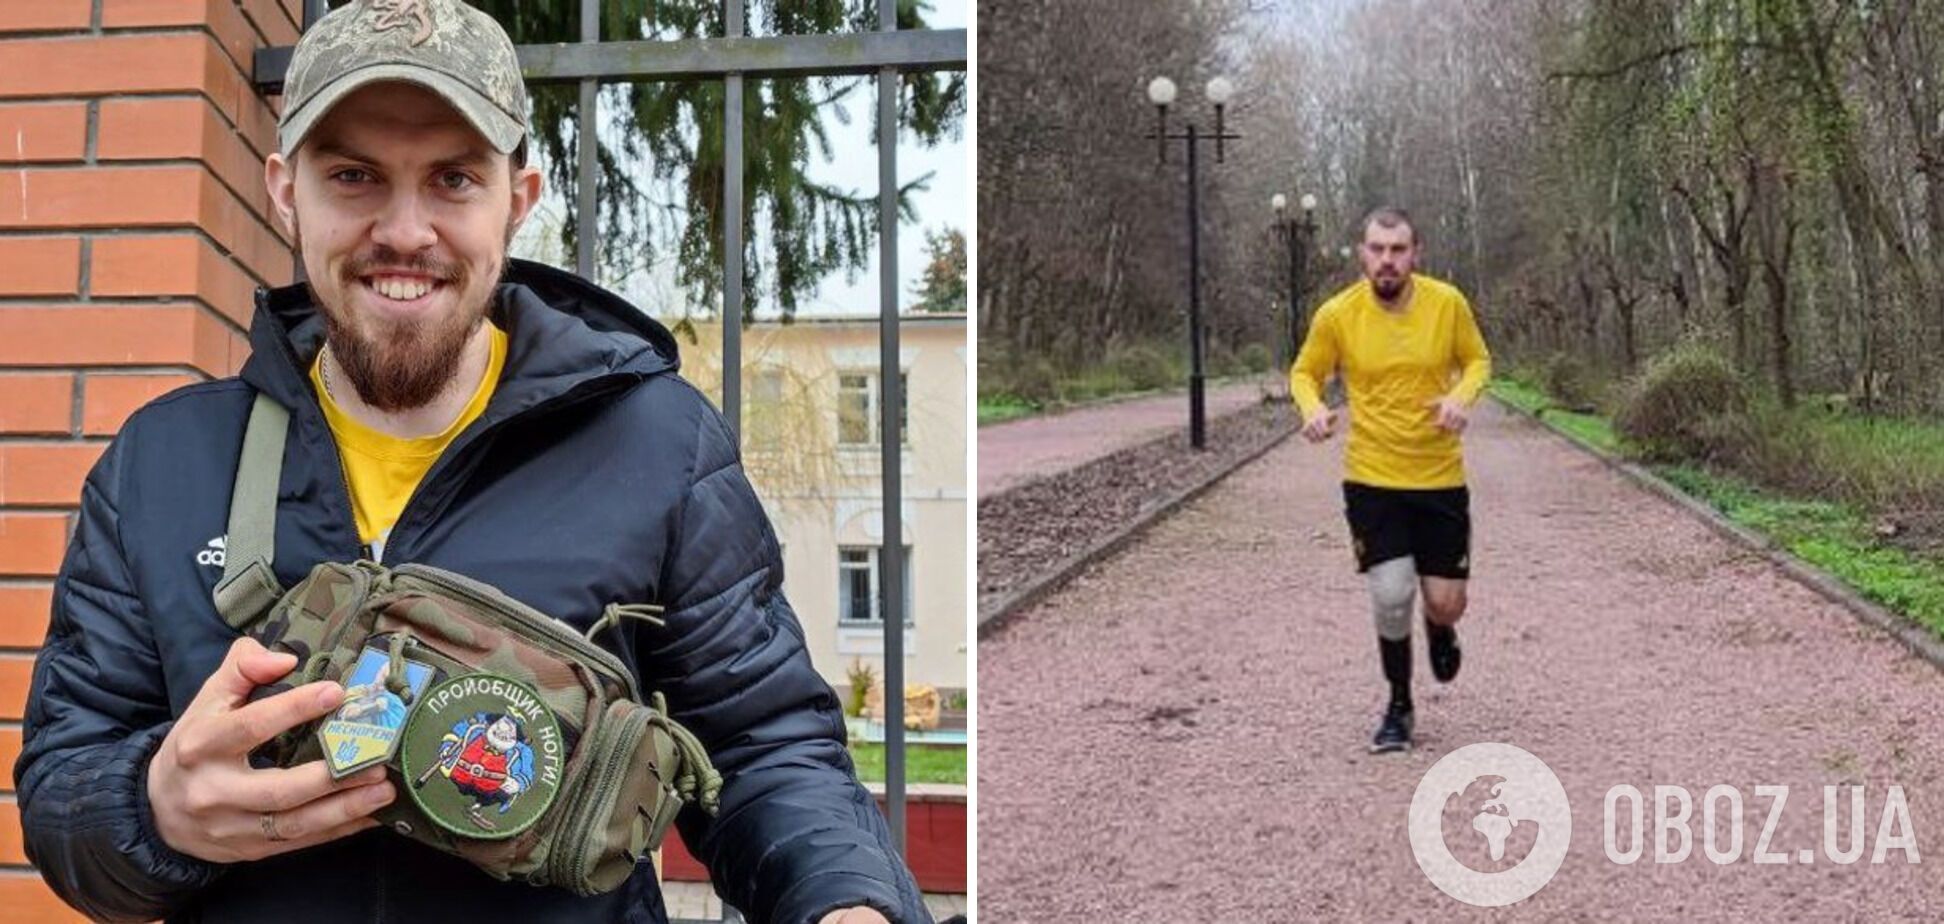 Украинский защитник, потерявший ногу во время войны на Донбассе, пробежит марафон в Лондоне